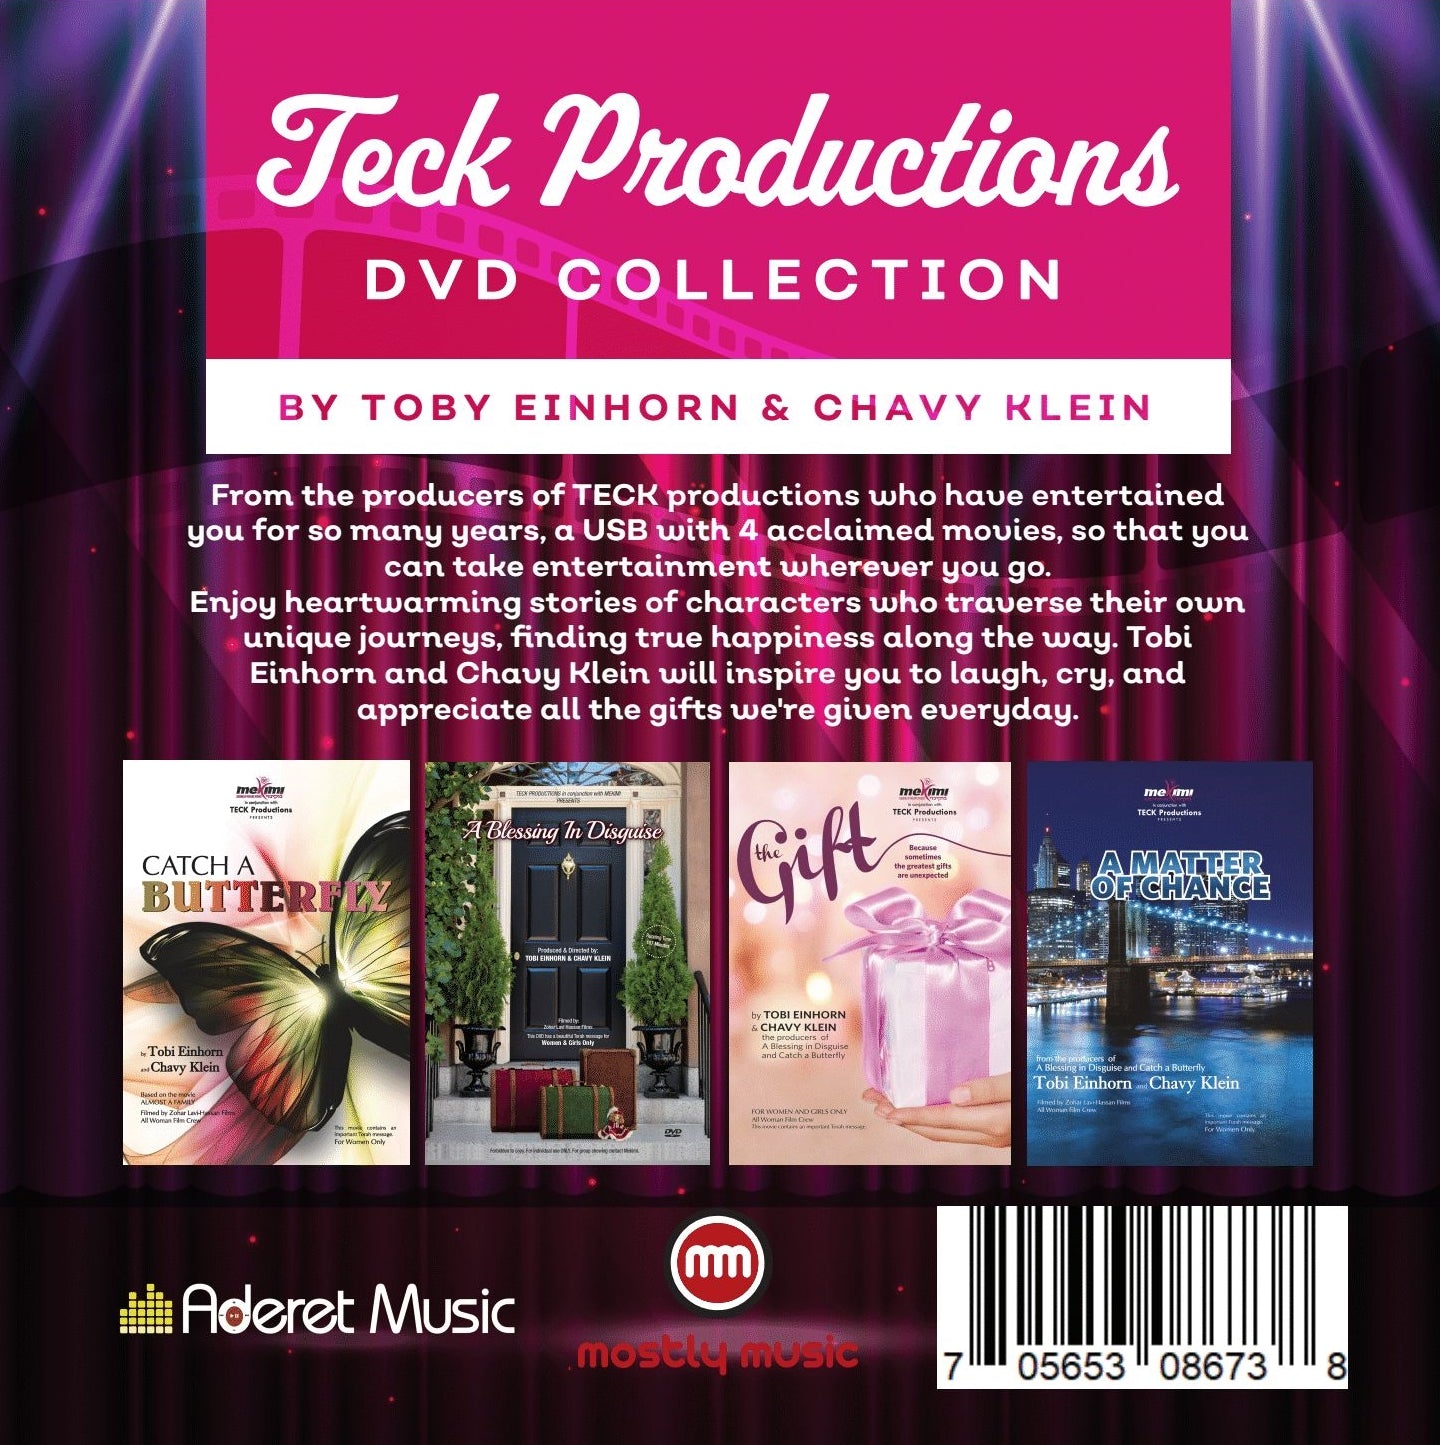 Teck Productios DVD Collection